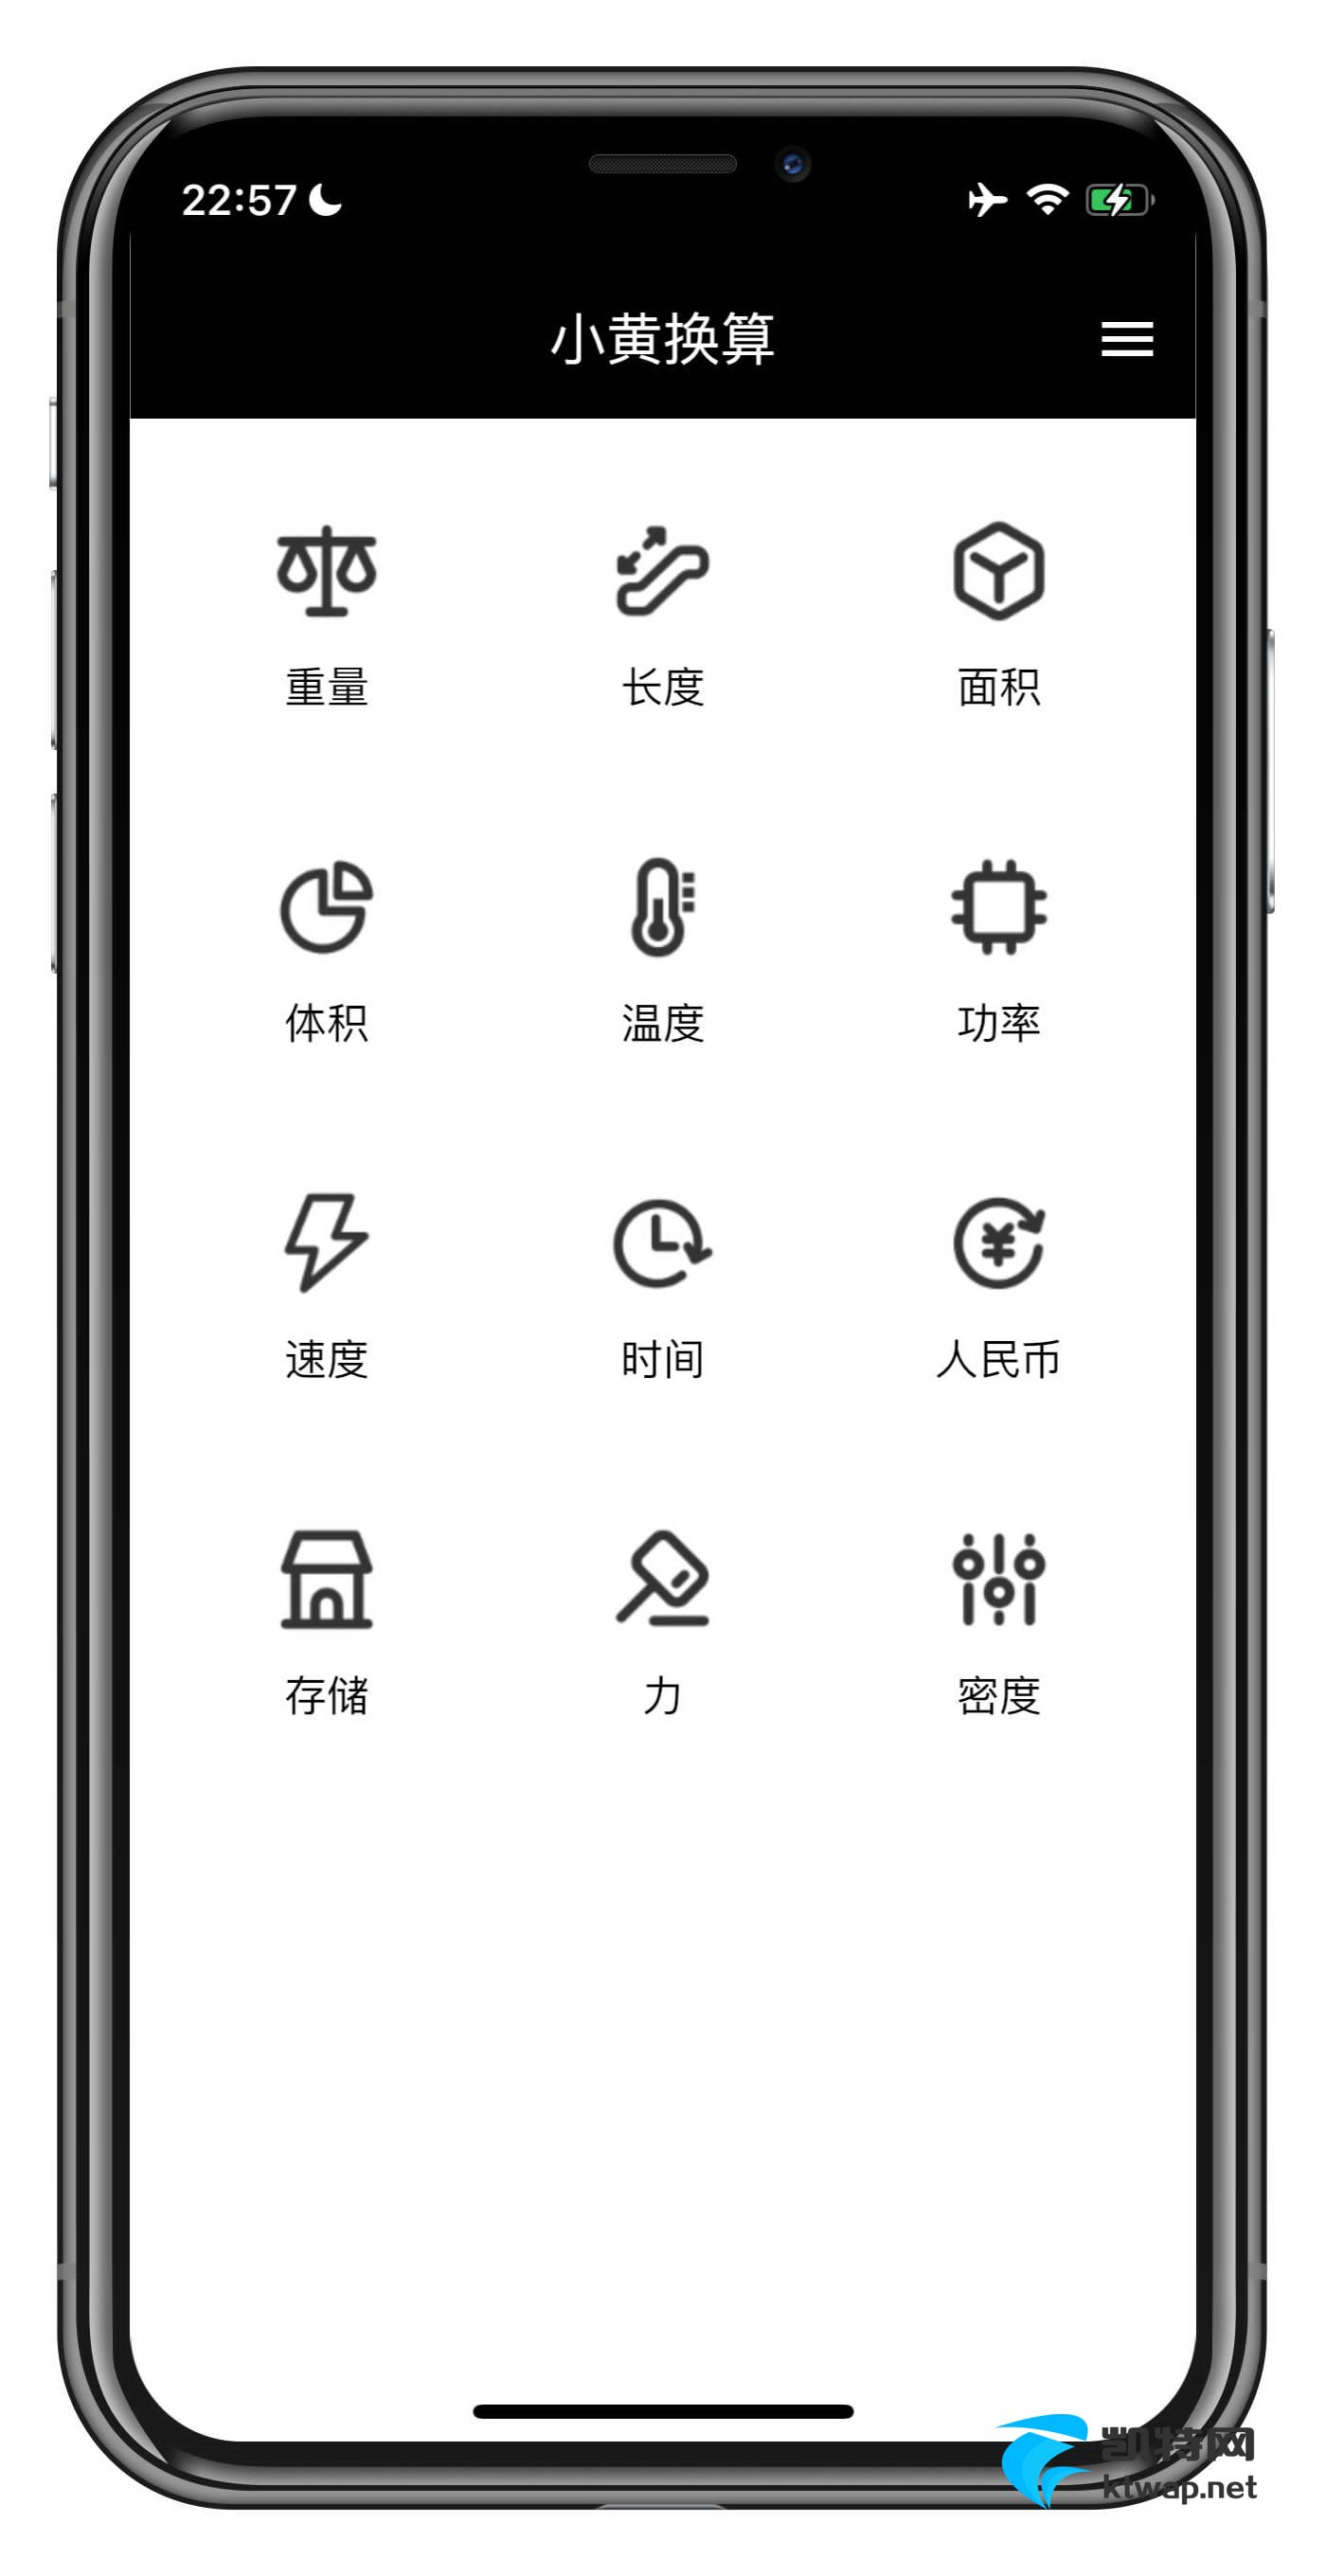 【iOS应用】小黄计算-单位换算小助手